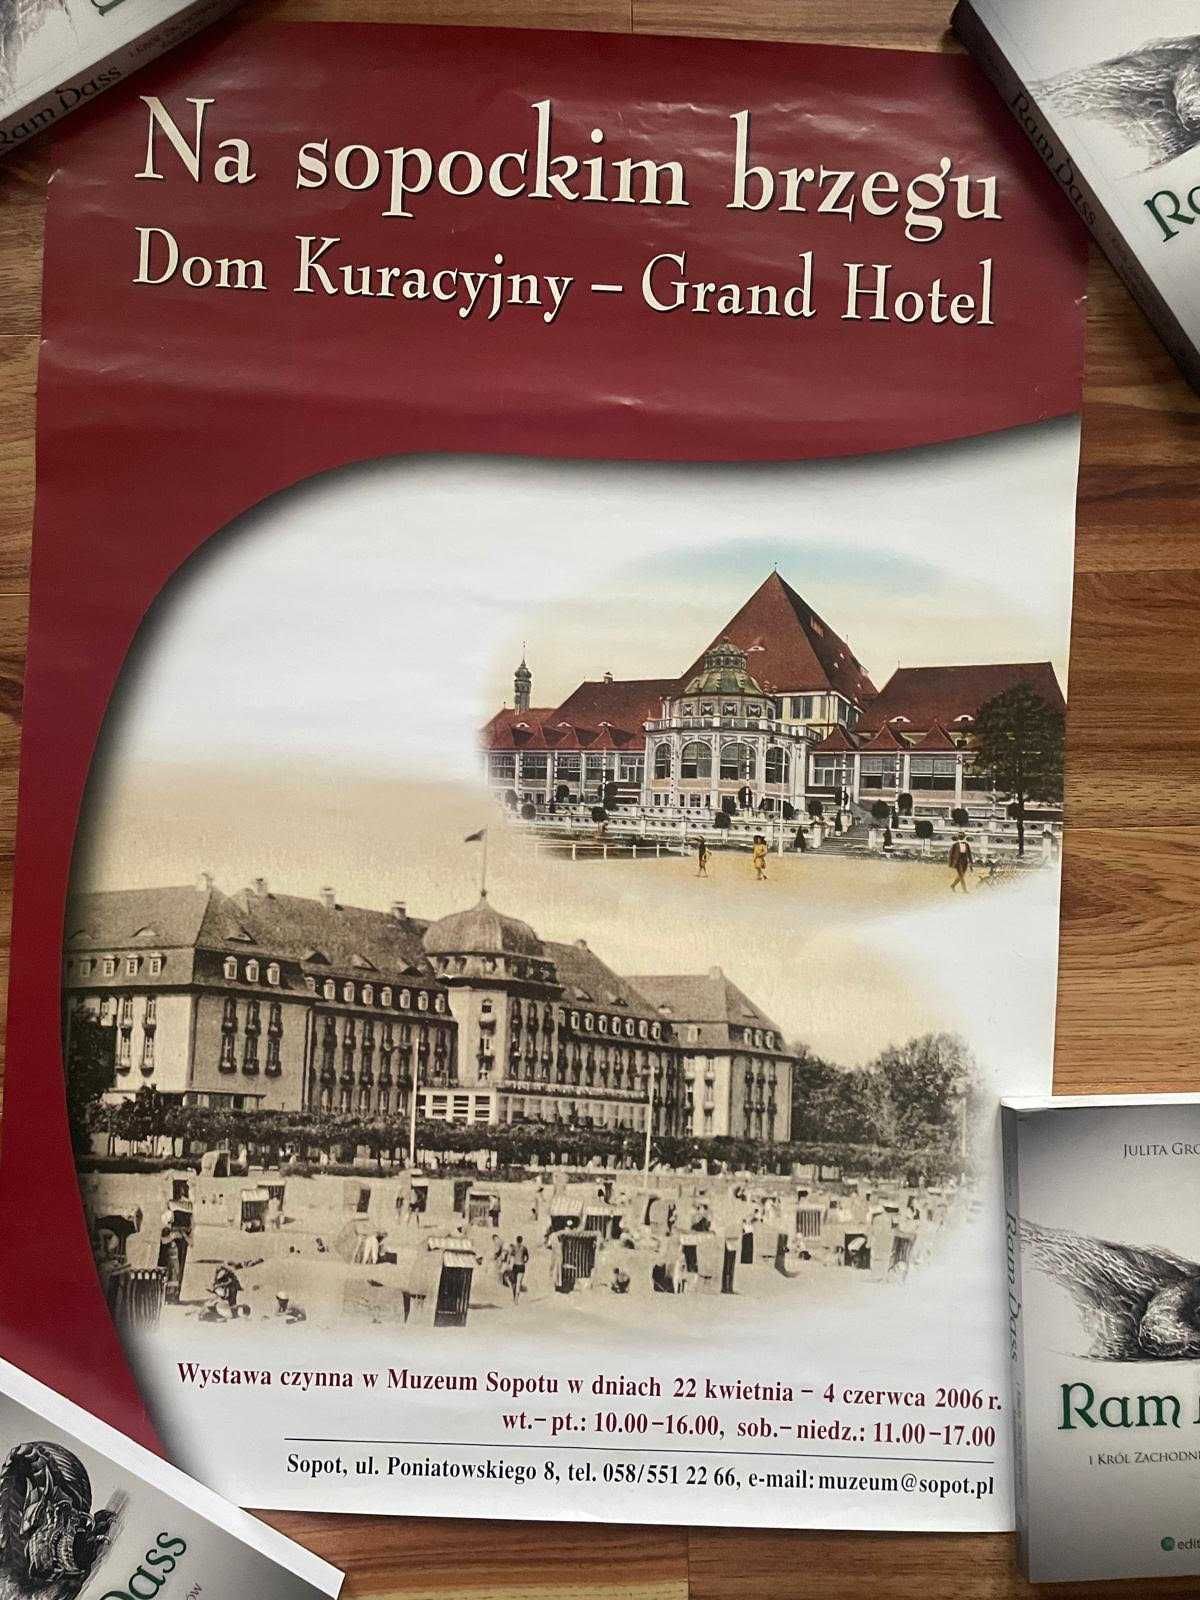 Plakat na sopockim brzegu Dom kuracyjny Grand Hotel